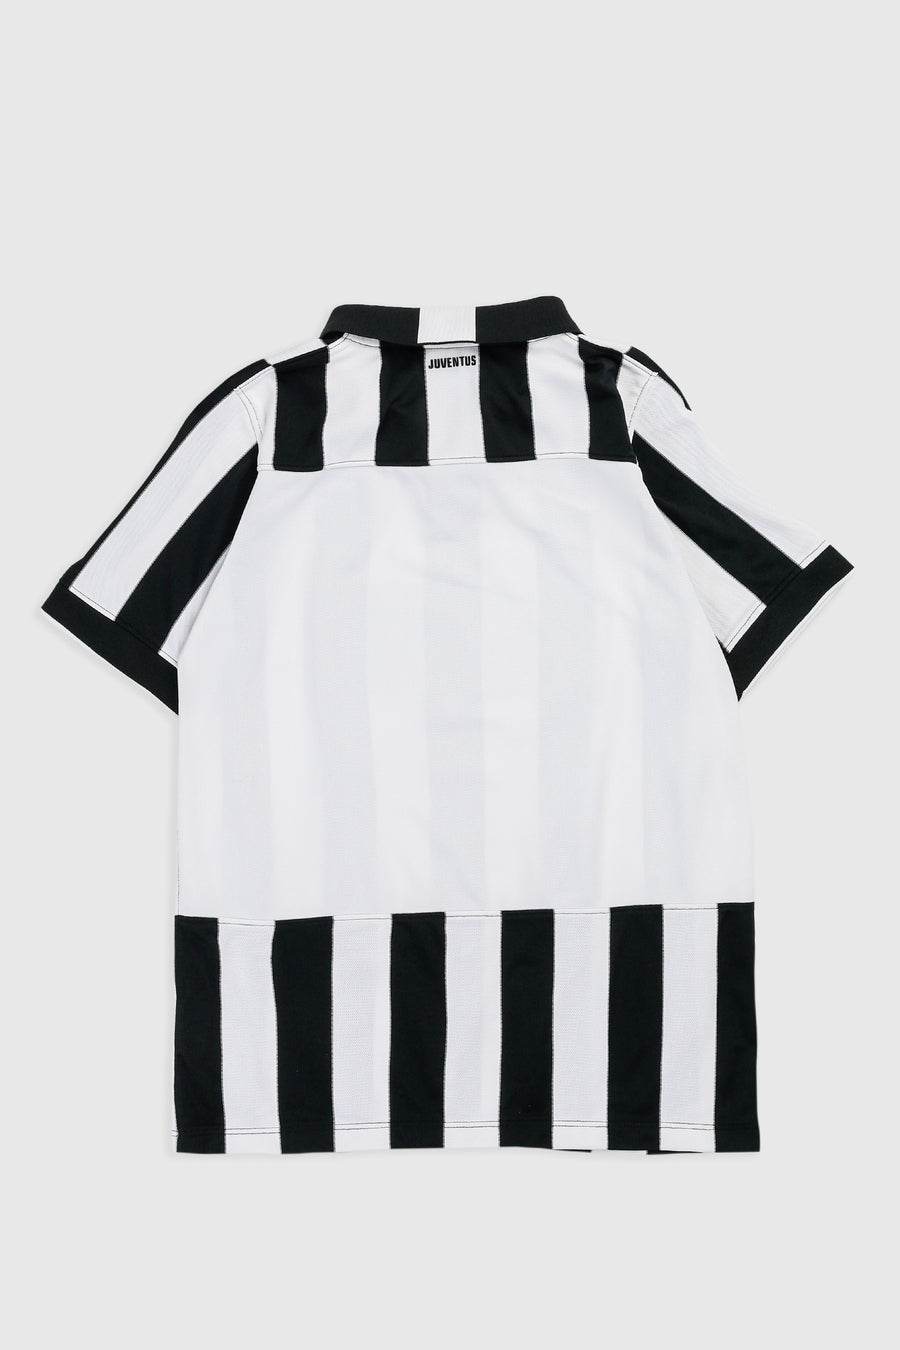 Vintage Juventus Soccer Jersey - S